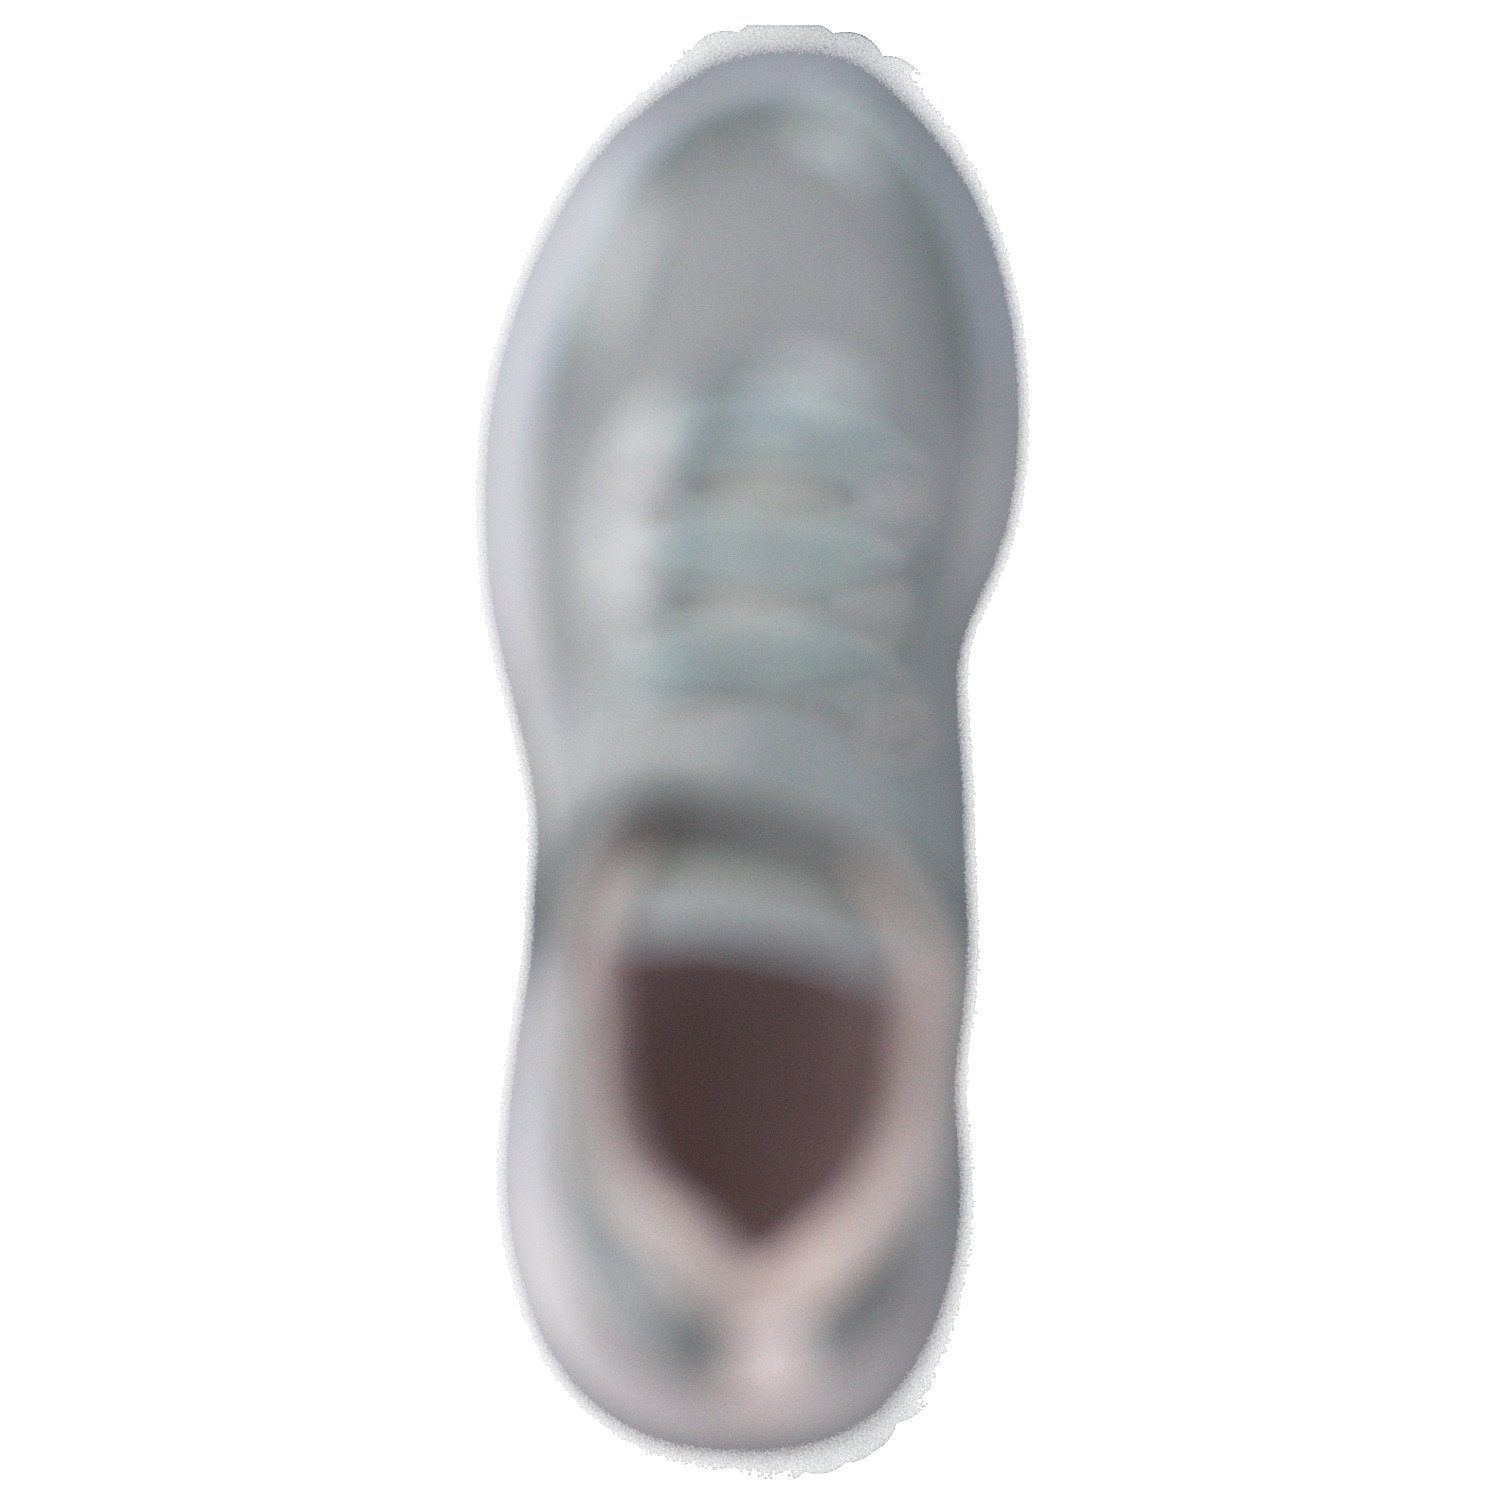 Grau EV KangaROOS Grey/Frost (Vapor KangaROOS Pink) (12801396) KQ-Fleet 18715 Sneaker